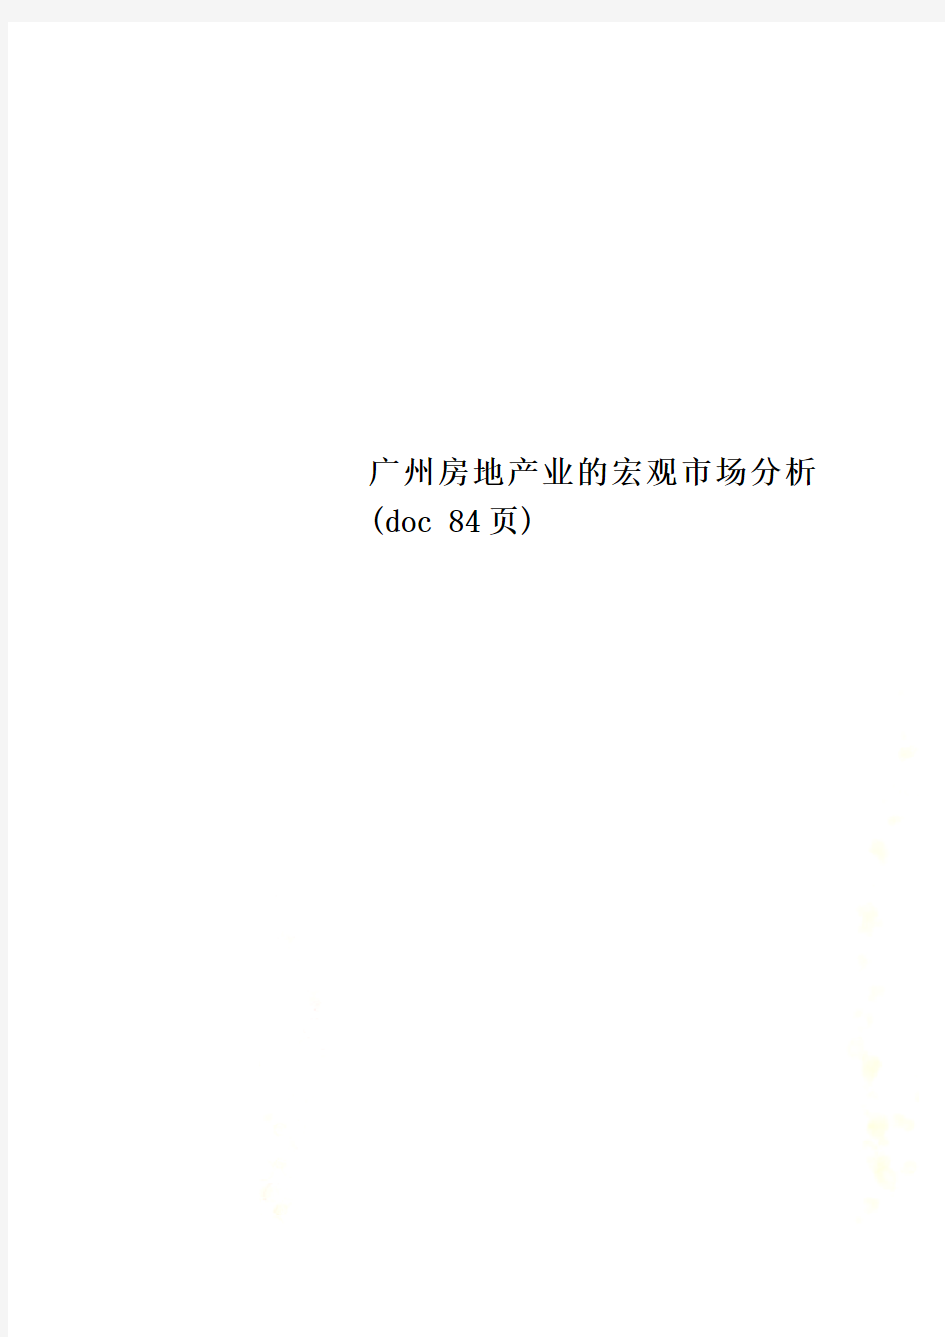 广州房地产业的宏观市场分析(doc 84页)_New